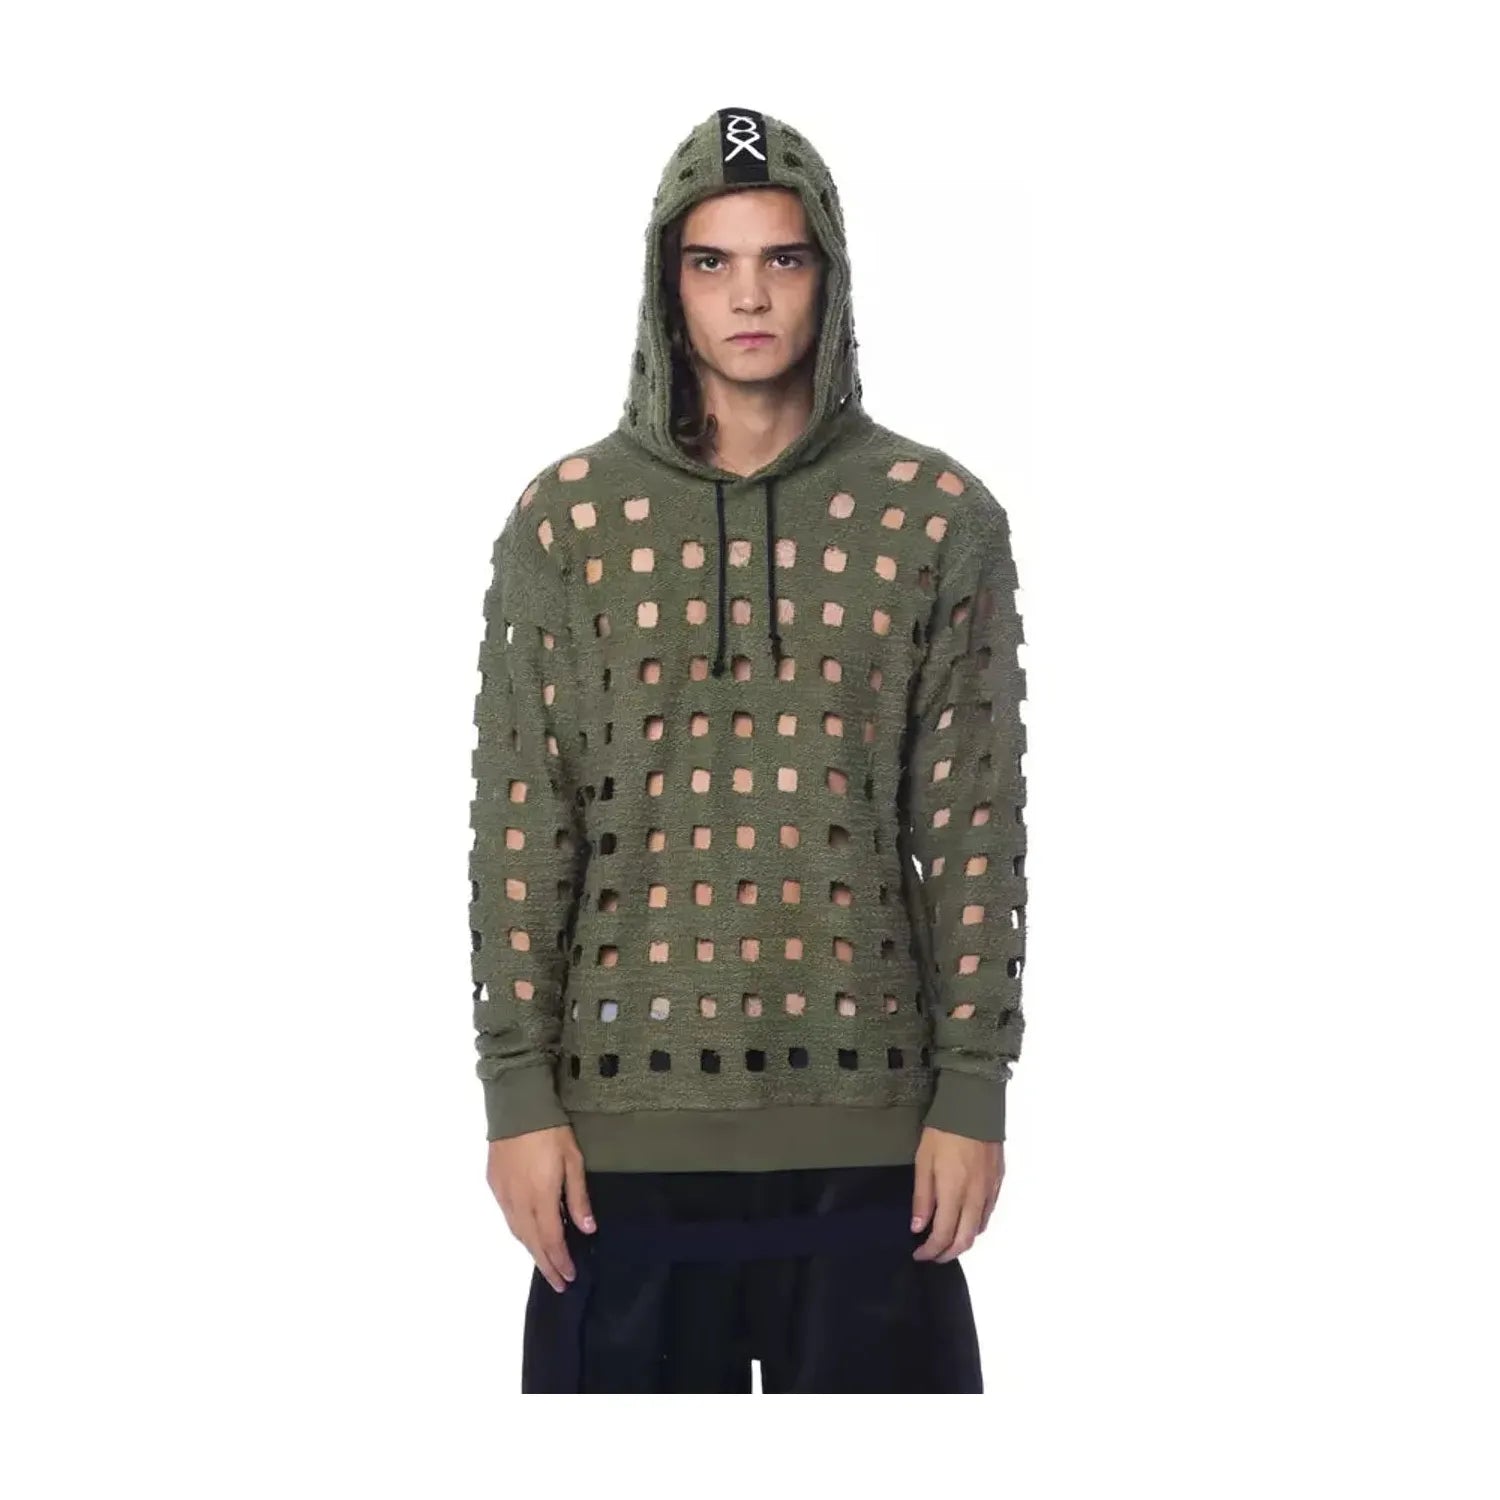 Nicolo Tonetto | Army Cotton Sweater | McRichard Designer Brands